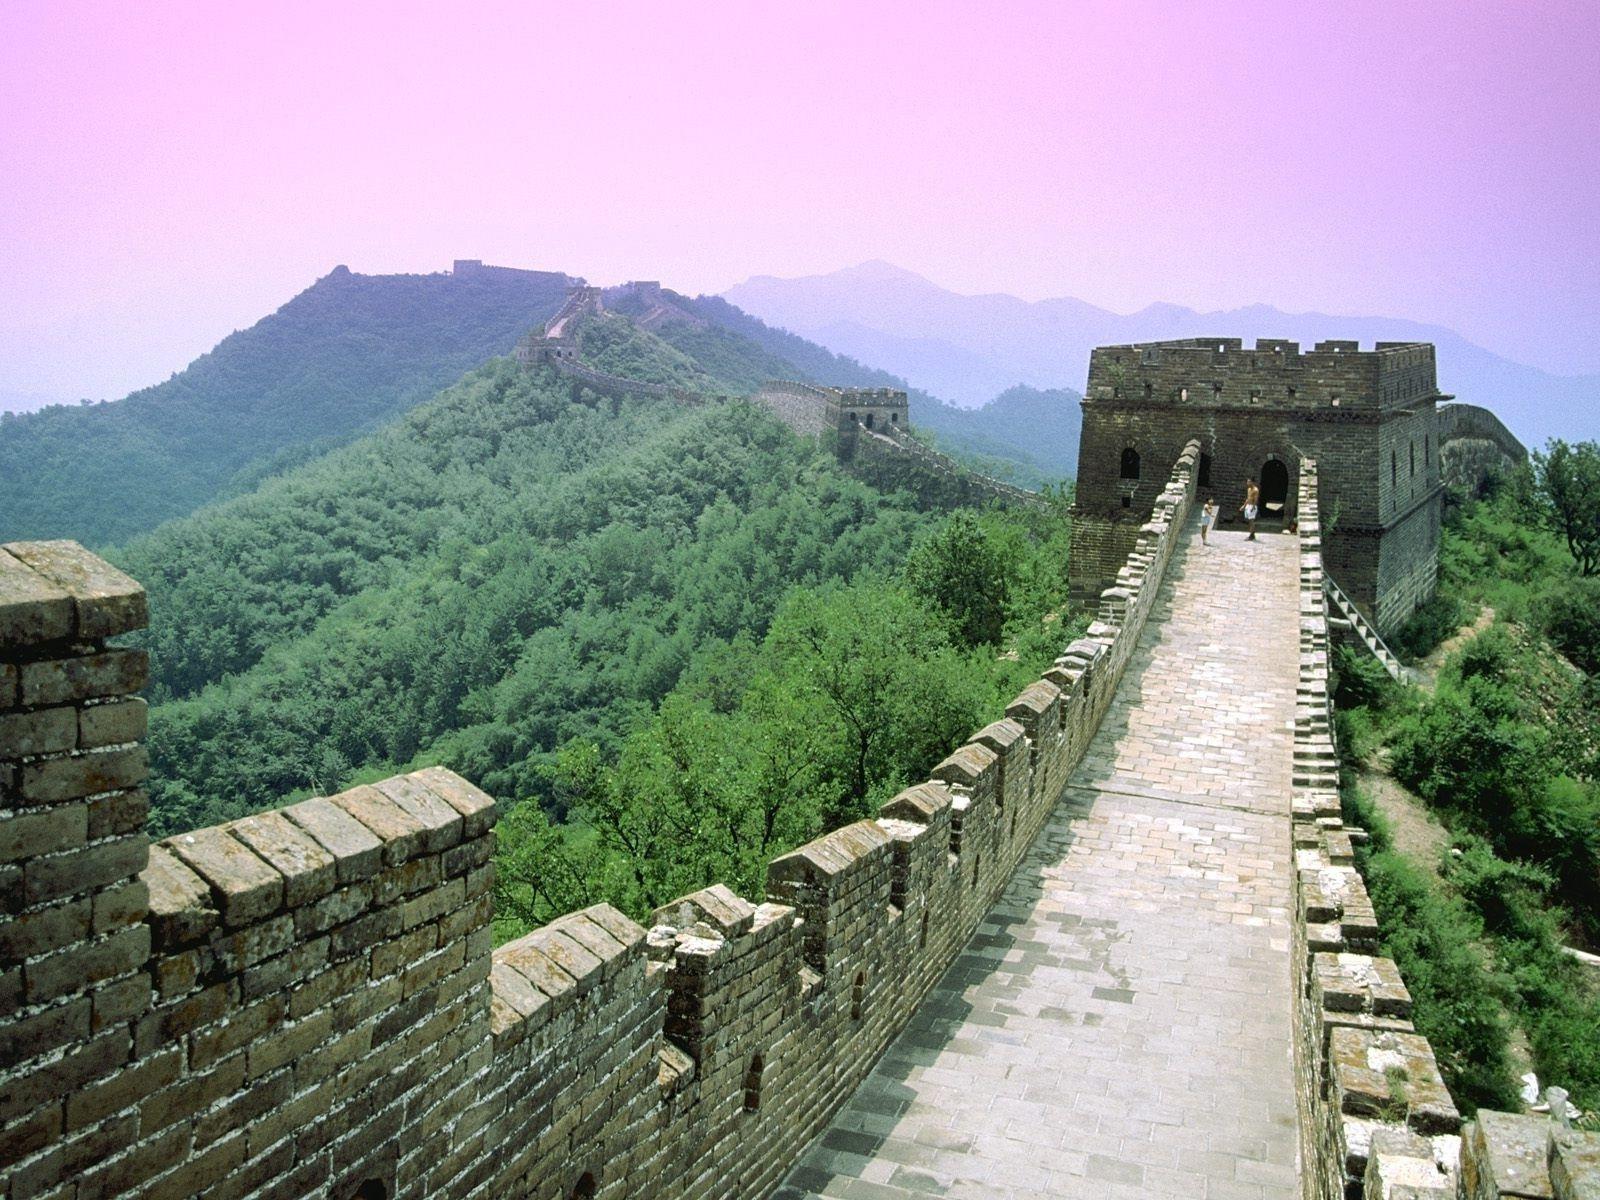 great wall of china panorama